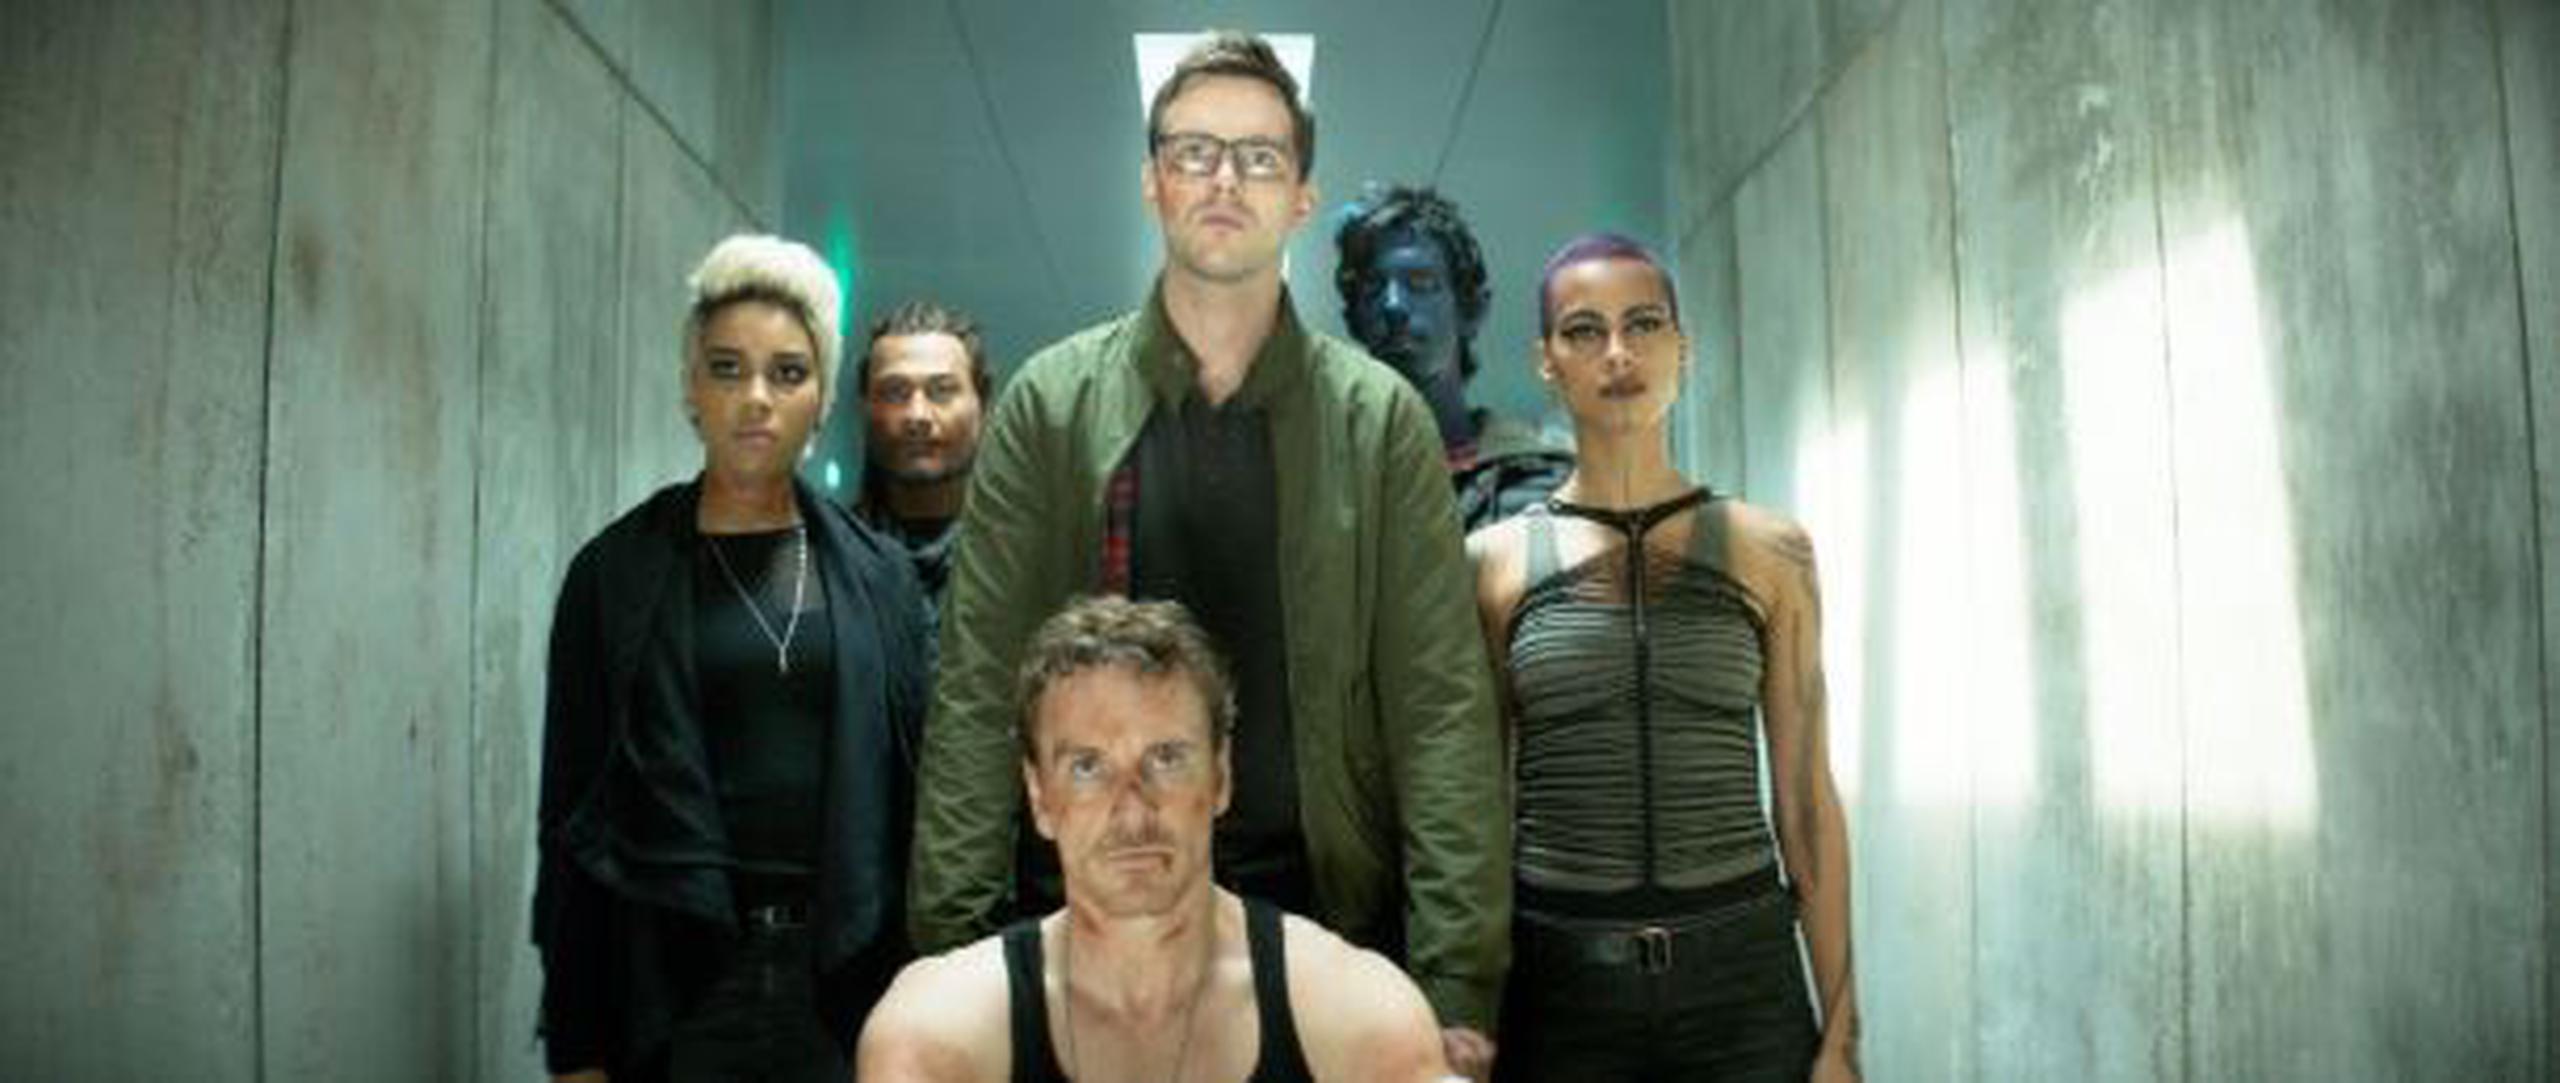 Magneto (Michael Fassbender) tendrá que volver a aliarse con los jóvenes héroes para detener la amenaza. (Captura)